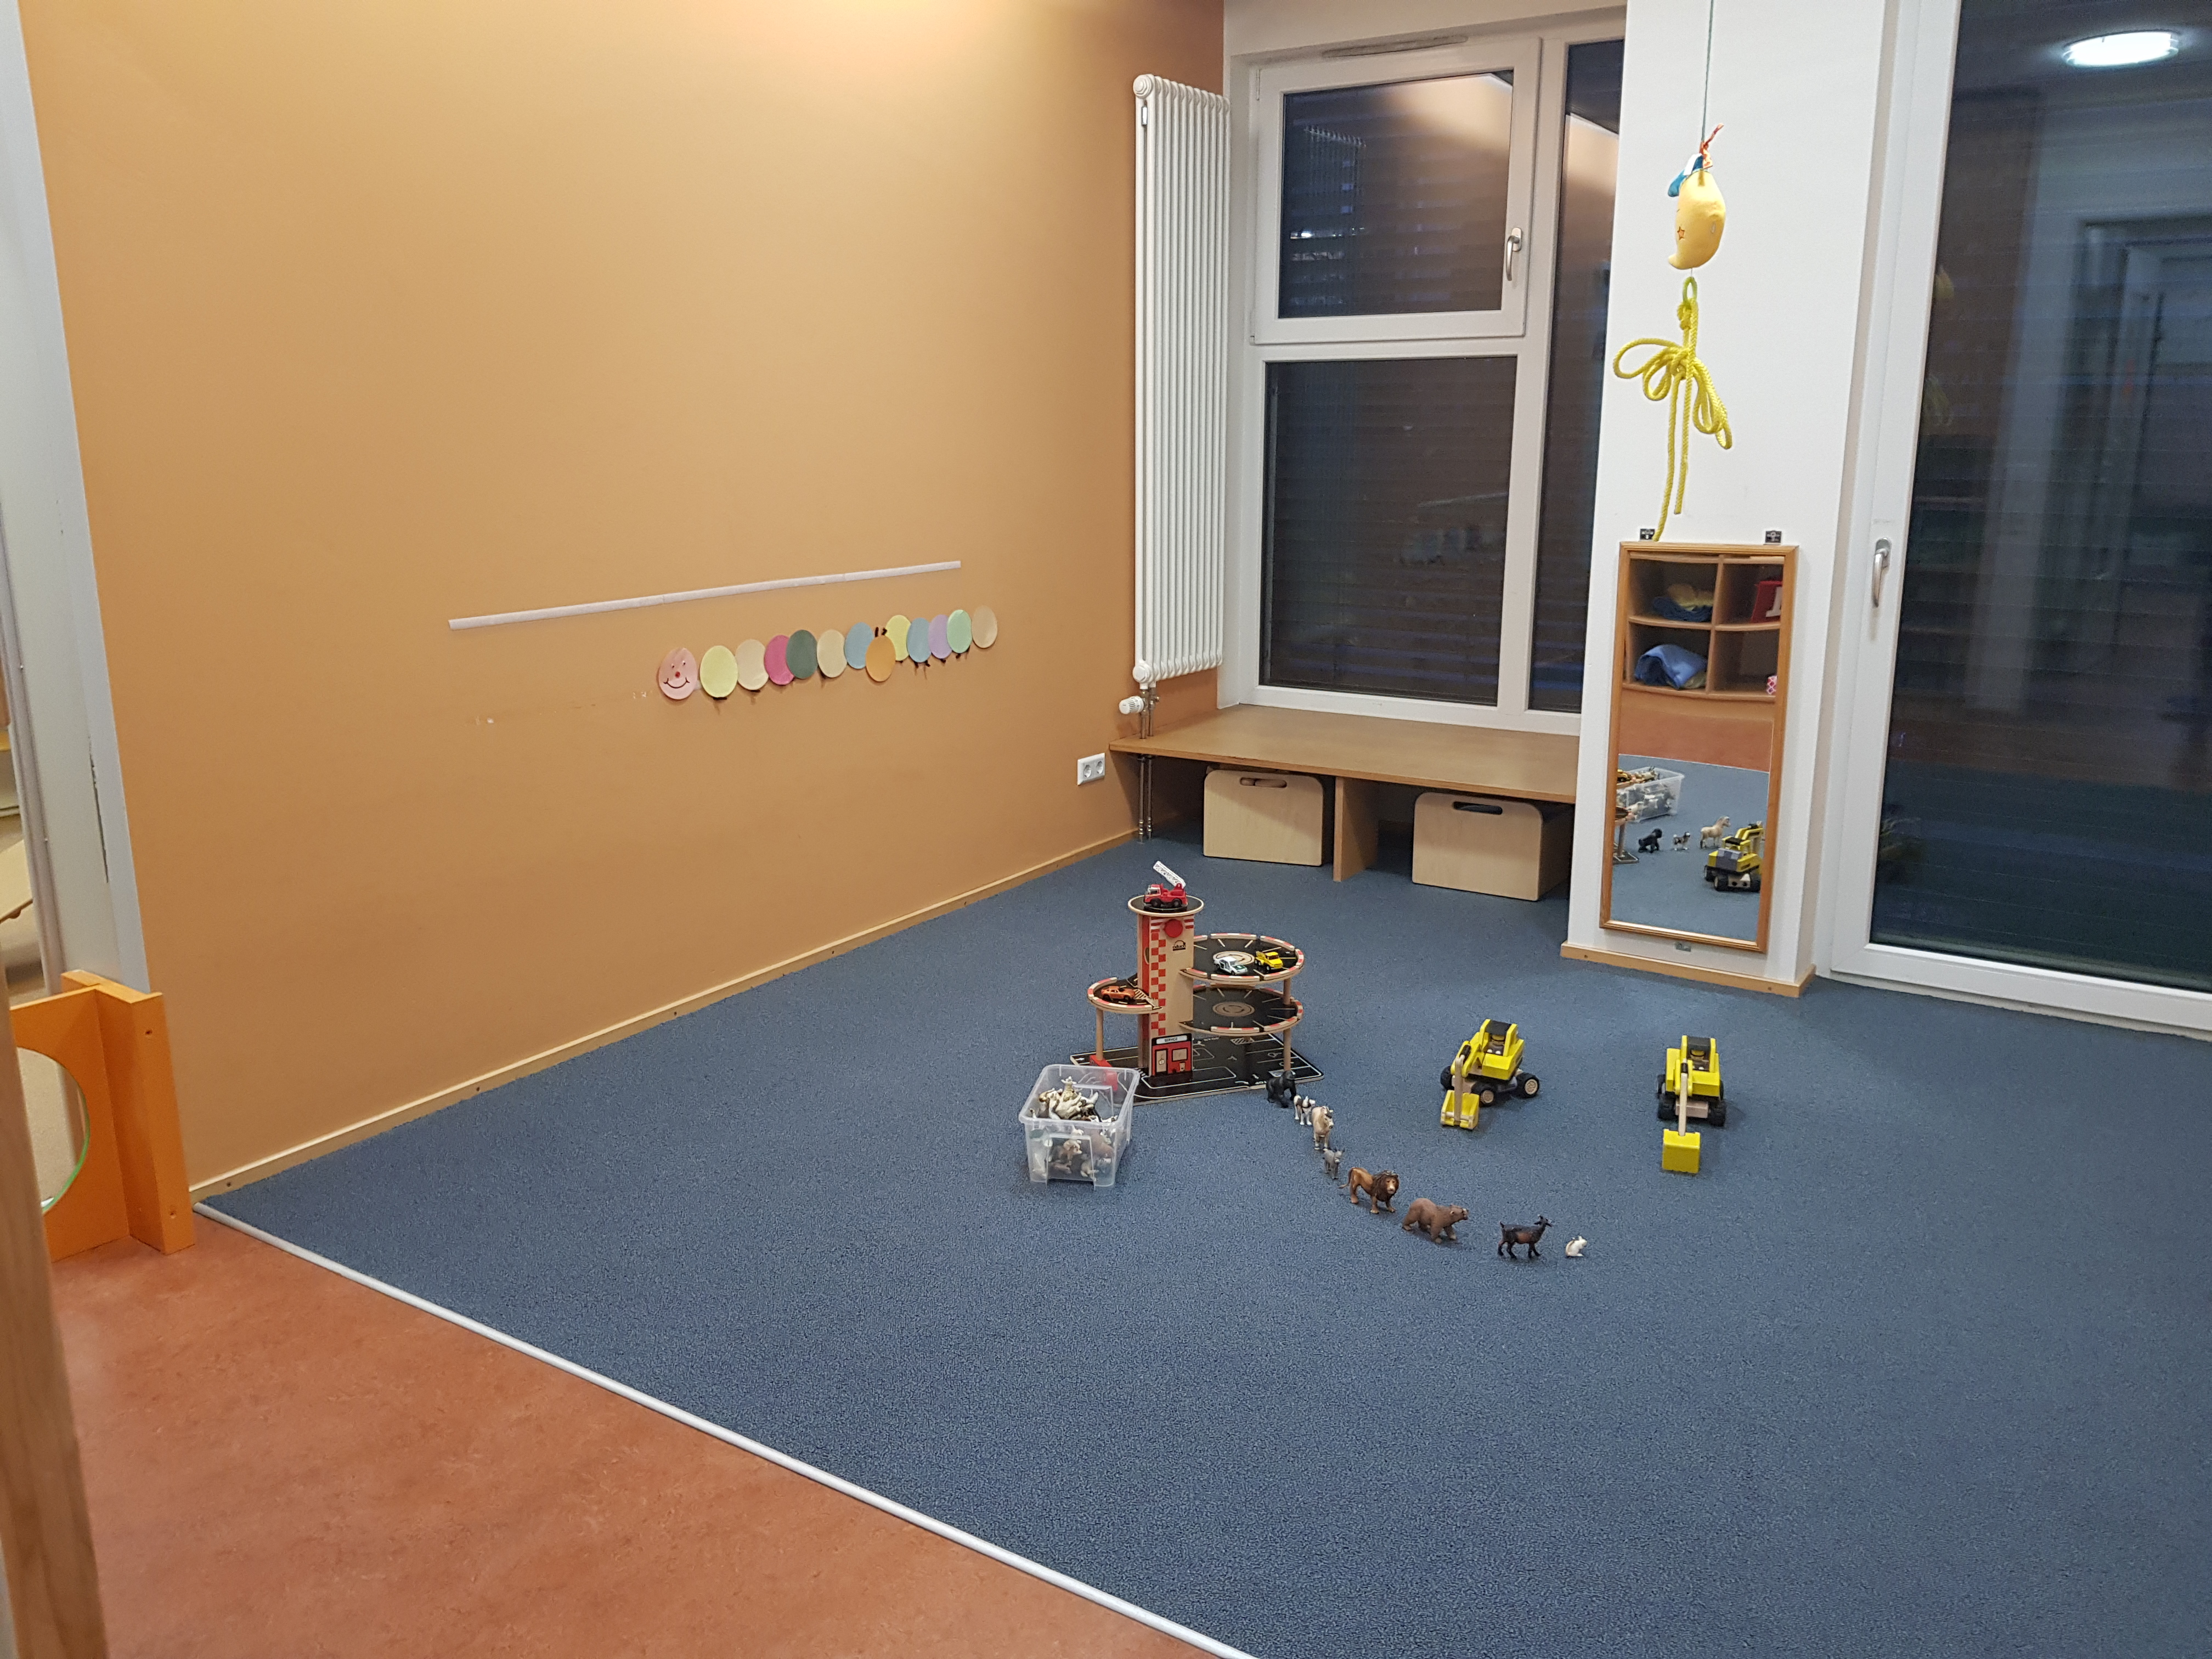 Das Bild zeigt eine Fläche, welche die Krippenkinder zum spielen und bauen benutzen. Es ist ein Parkhaus, Tiere aus Gummi und zwei gelbe Bagger abgebildet.